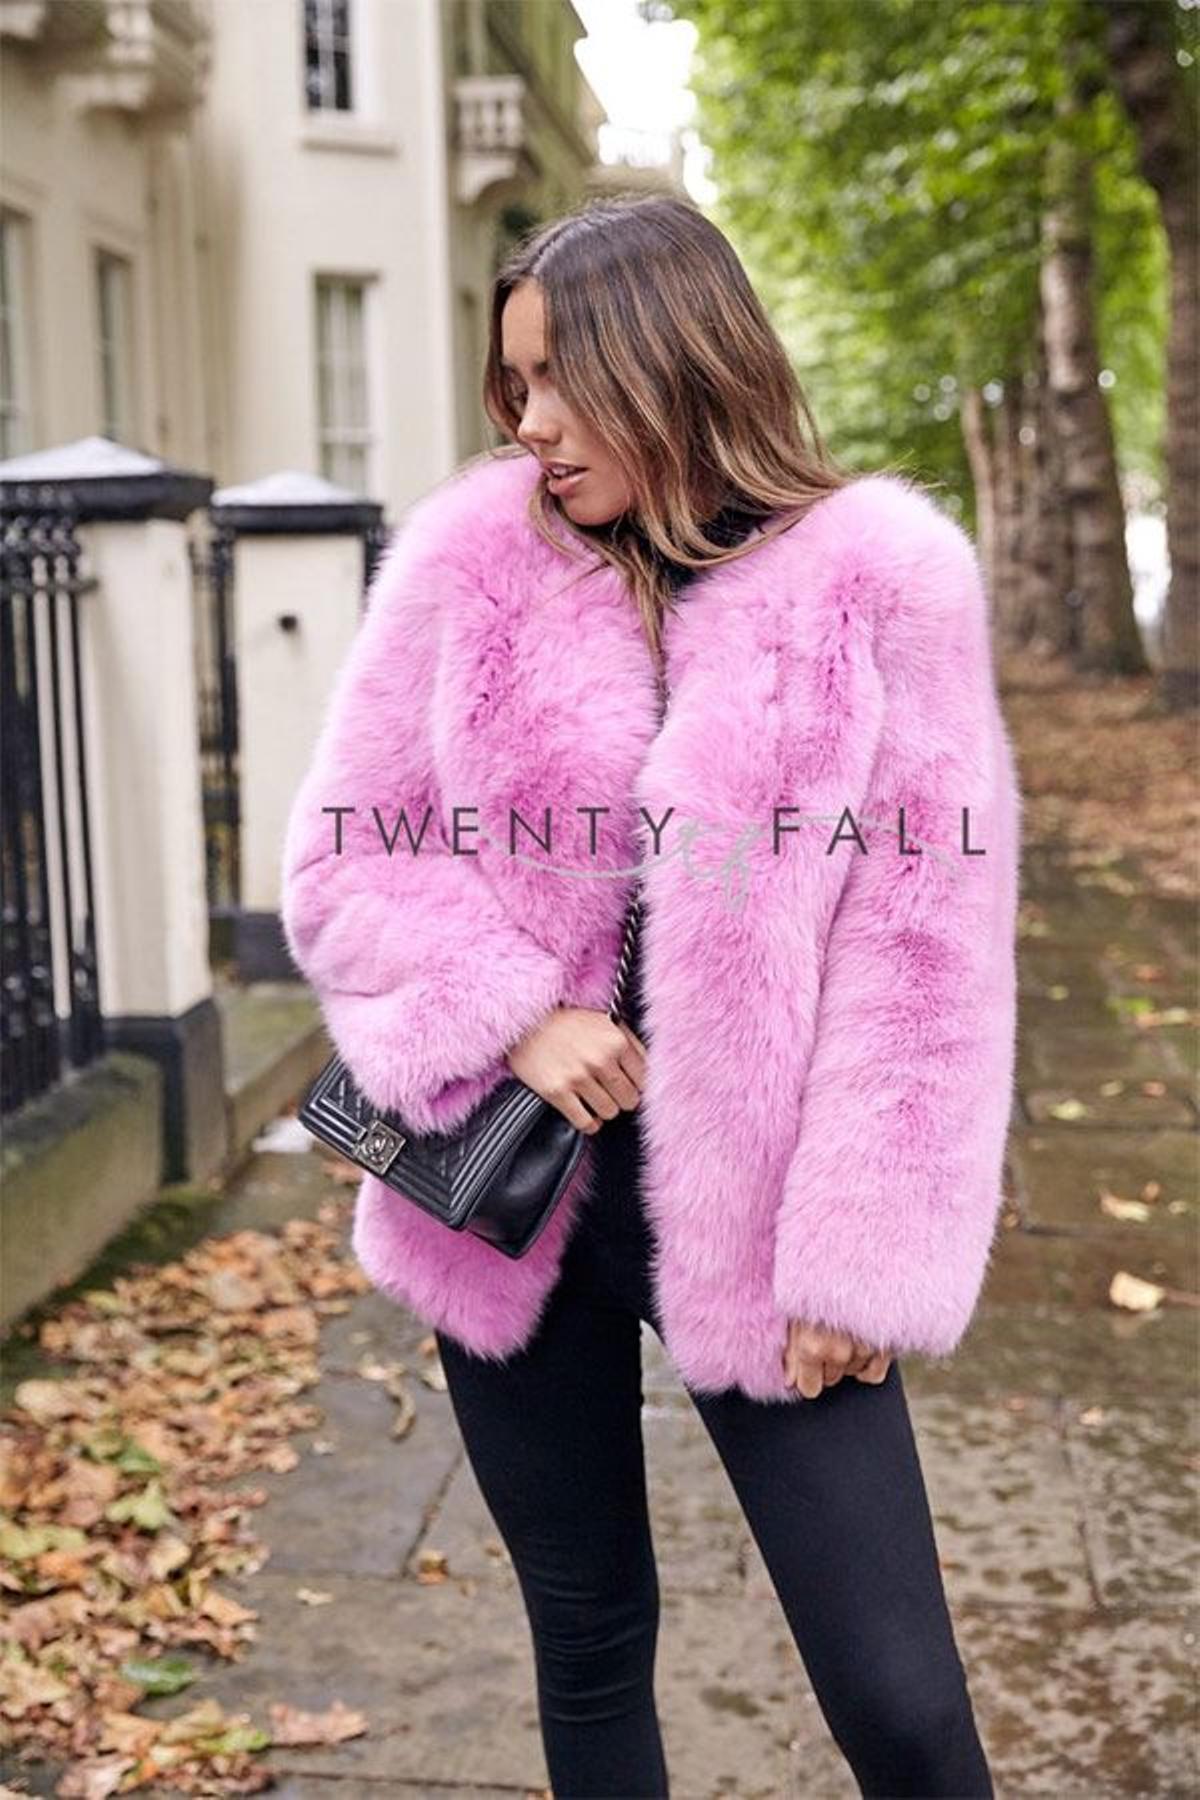 Abrigos de pelo rosa, la prenda estrella del invierno - Woman